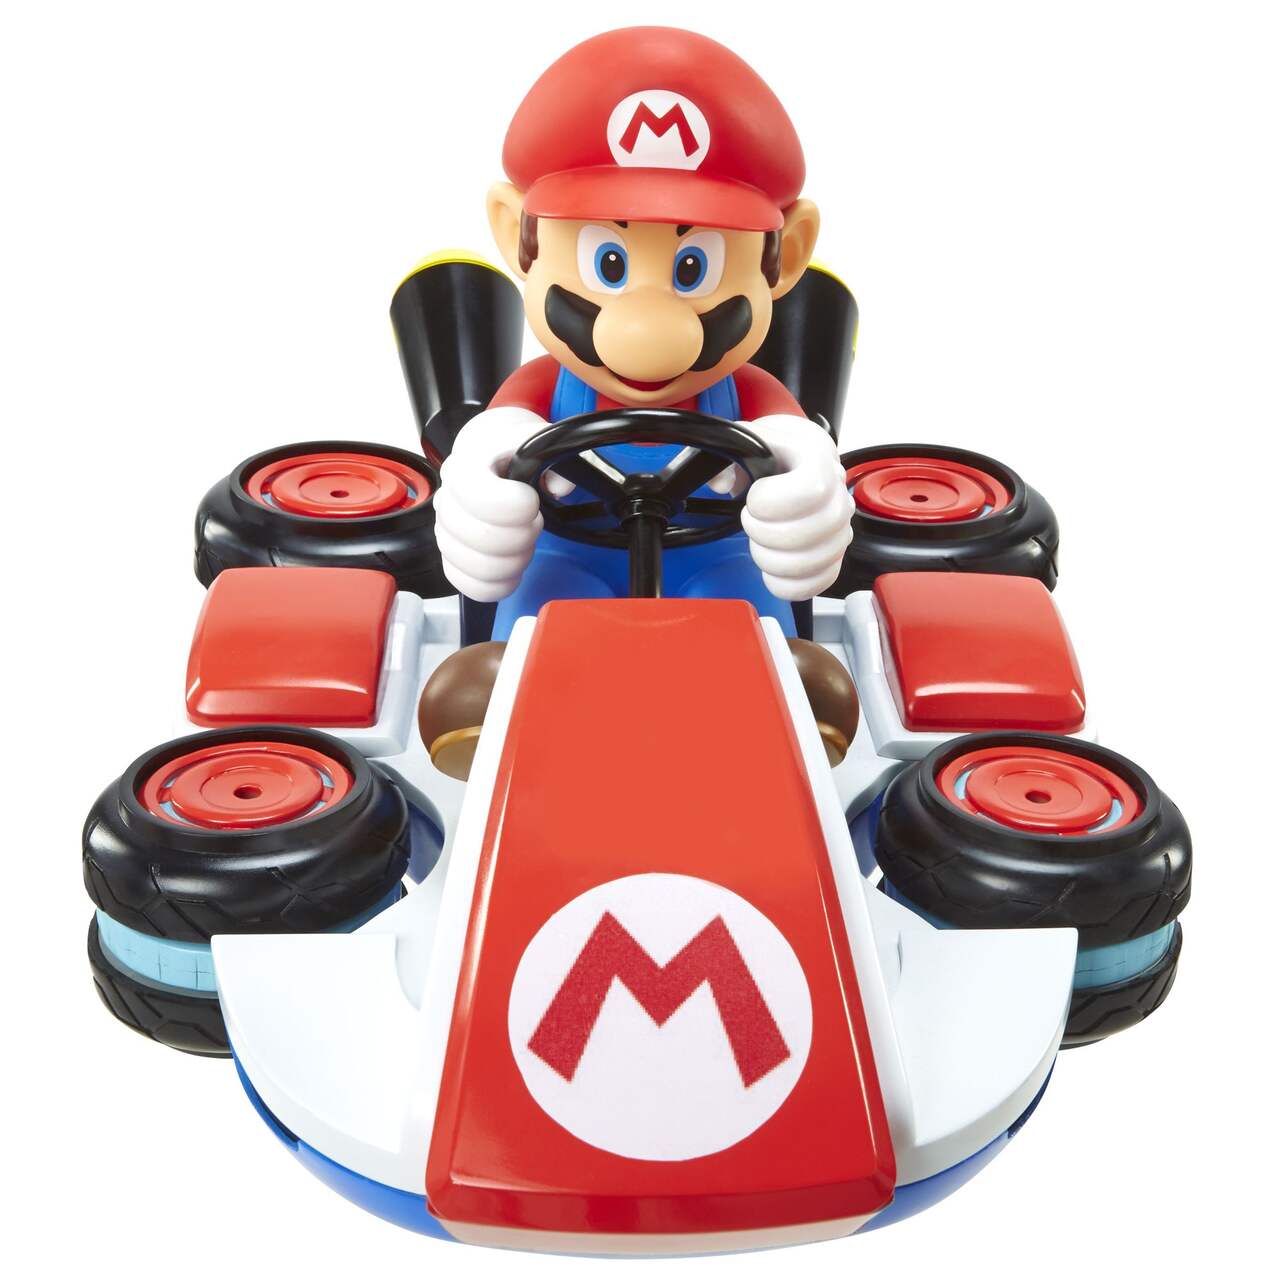 Voiture téléguidée Nintendo Mariokart, 4 ans et plus